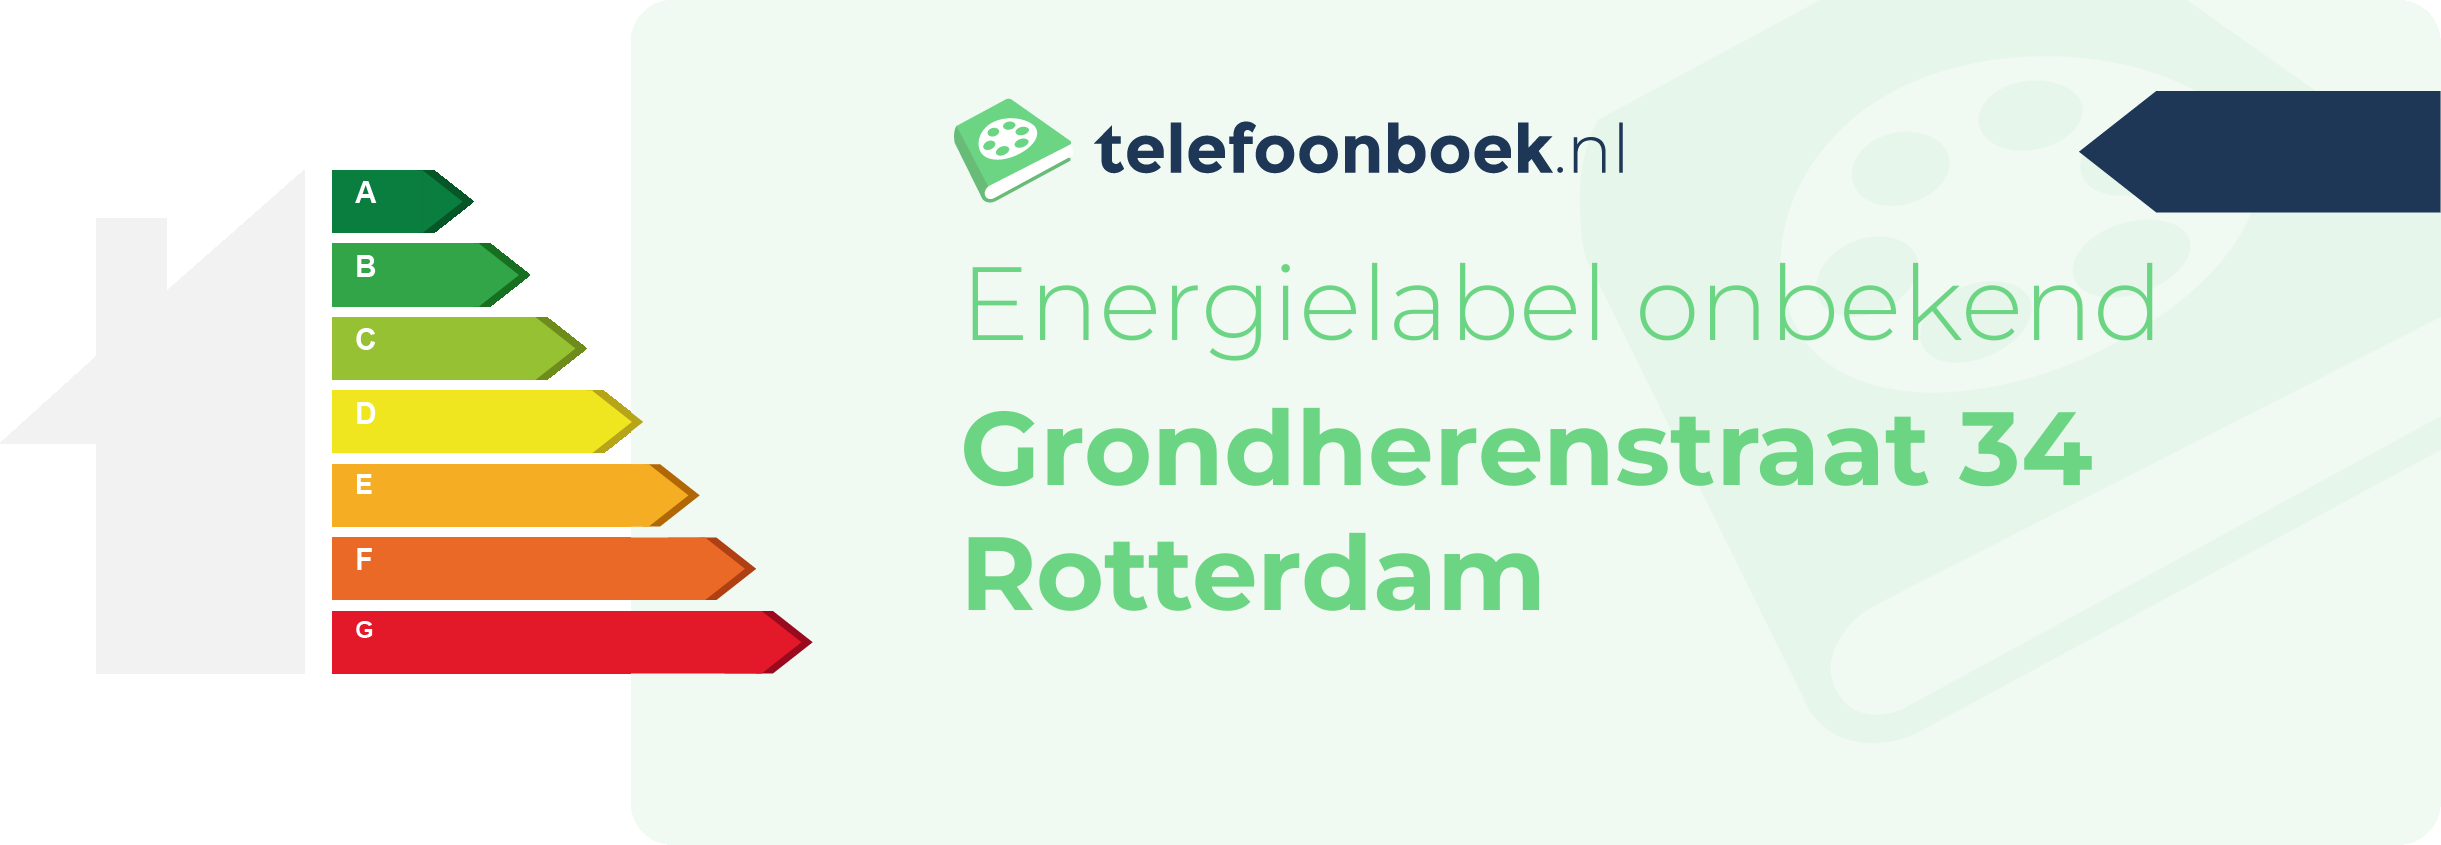 Energielabel Grondherenstraat 34 Rotterdam